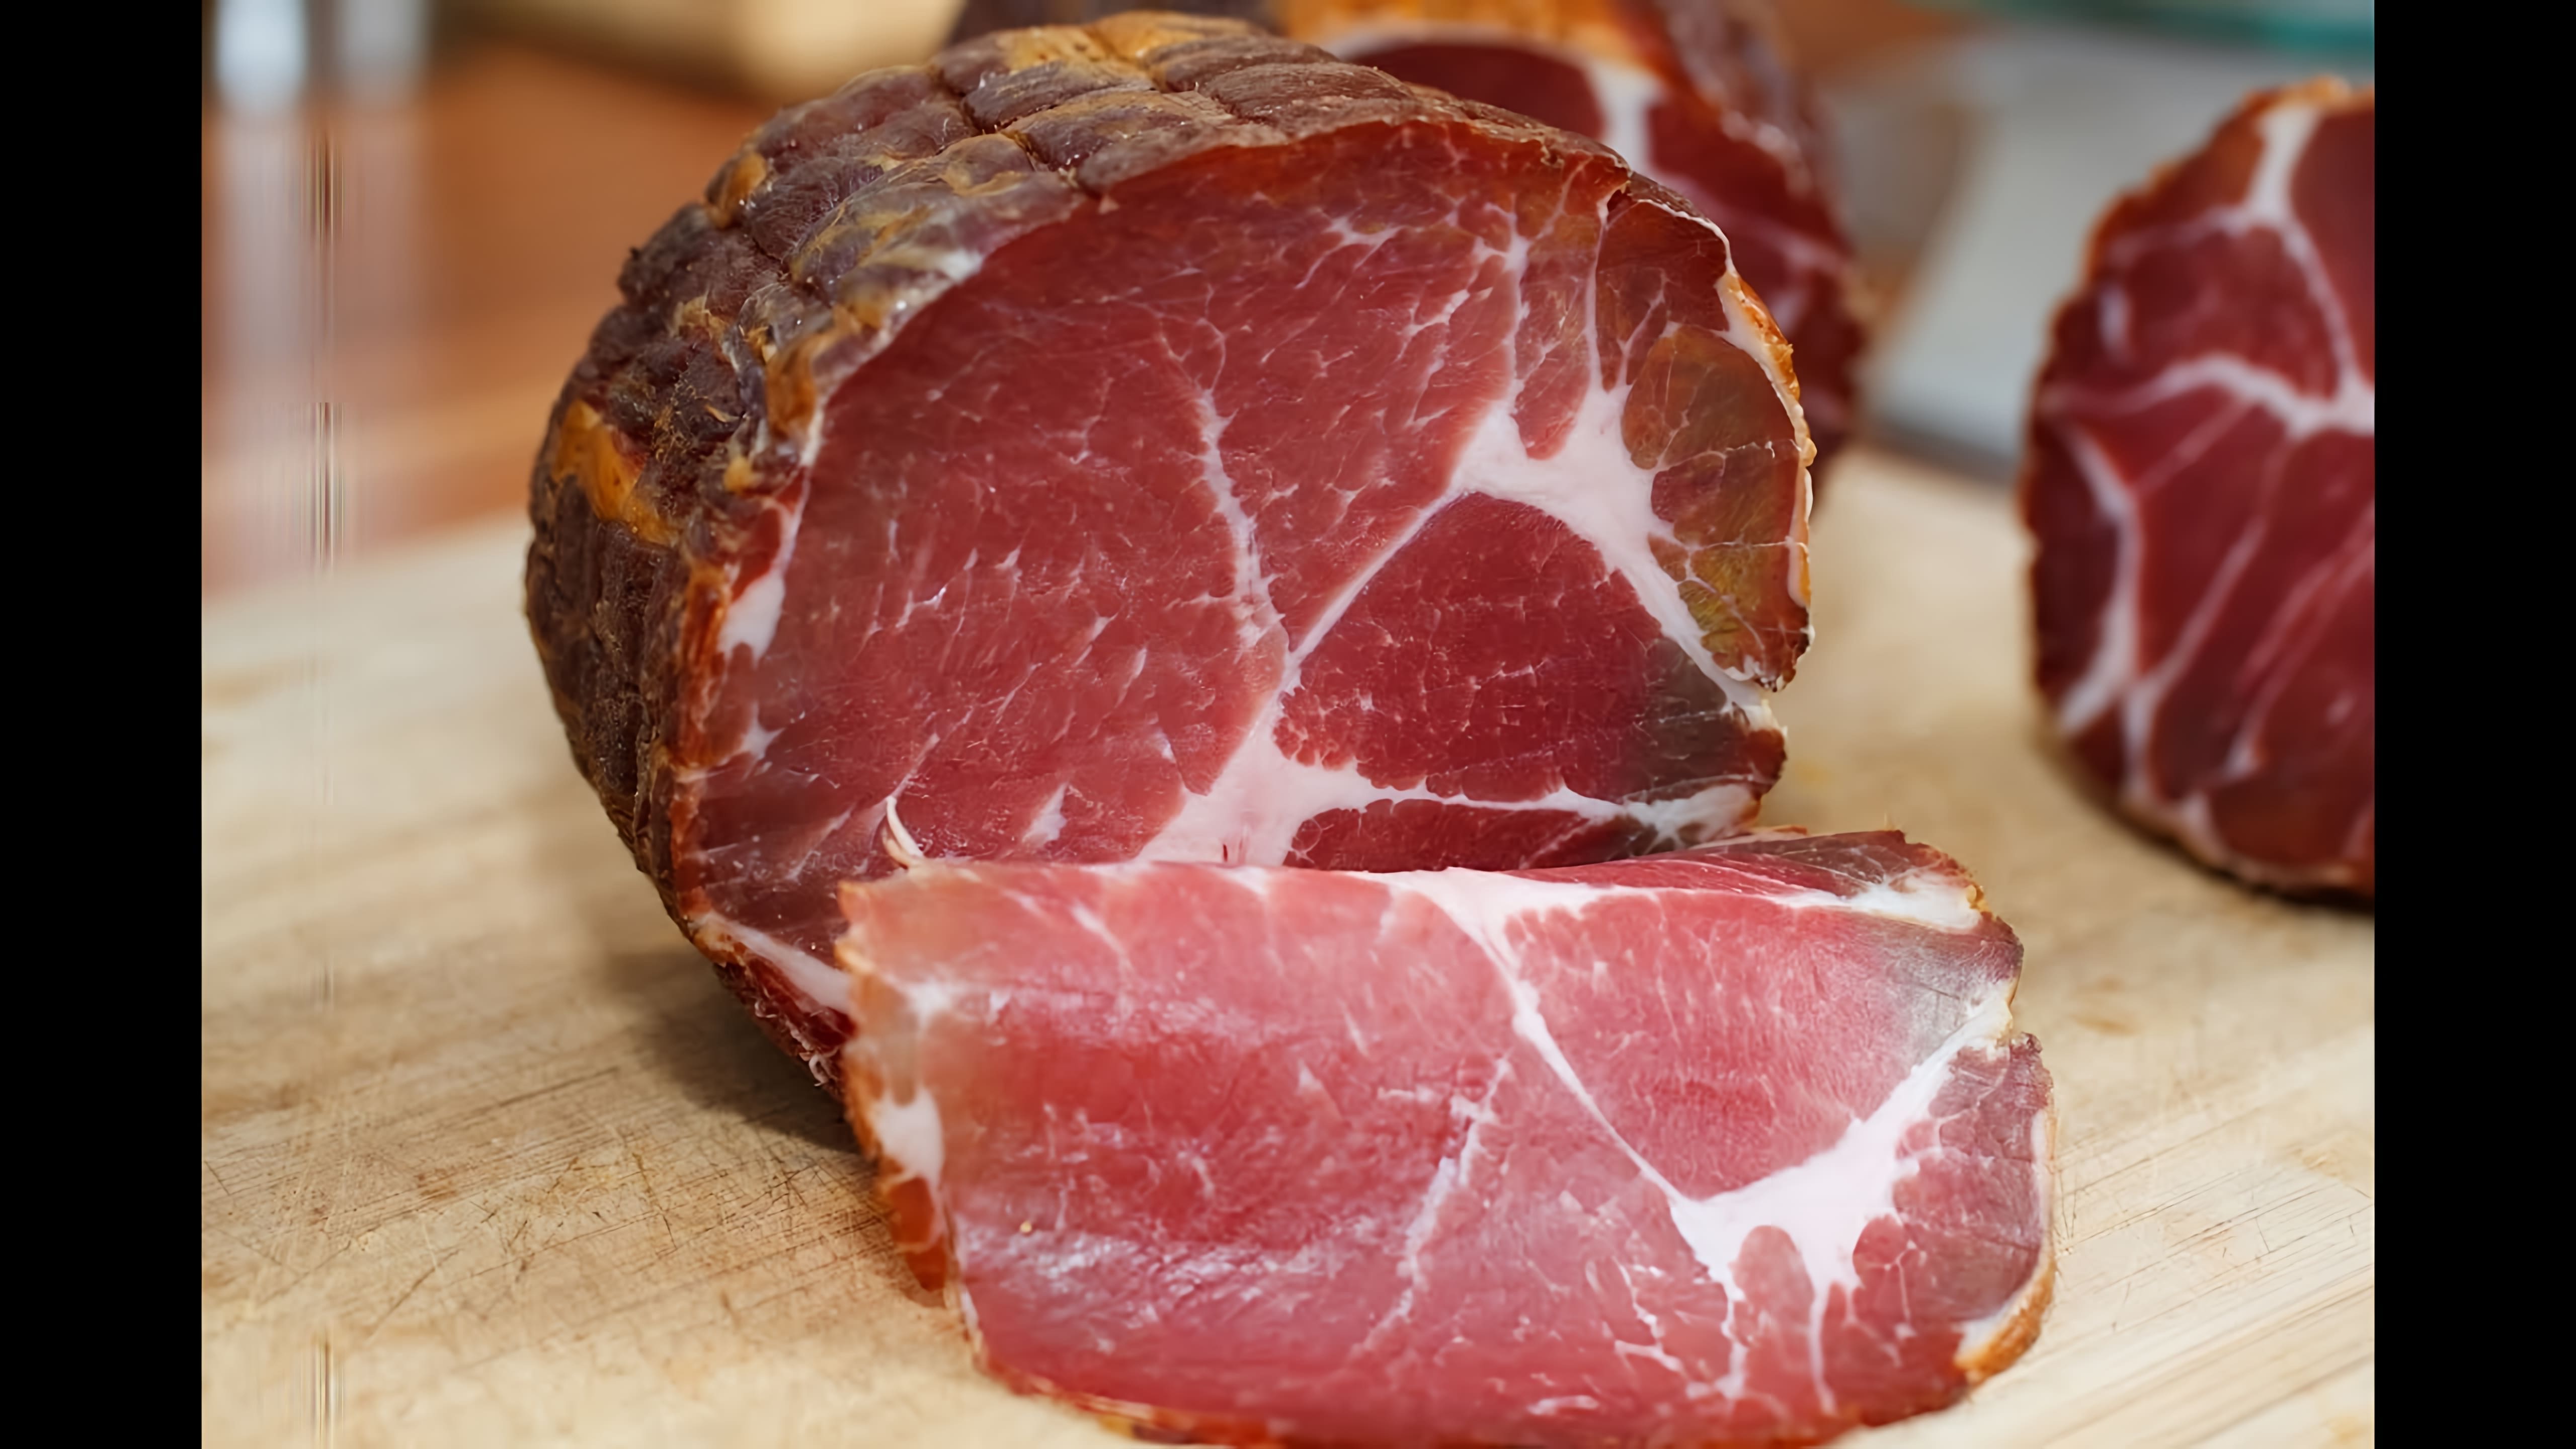 В этом видео демонстрируется процесс приготовления вяленого мяса шейки свинины